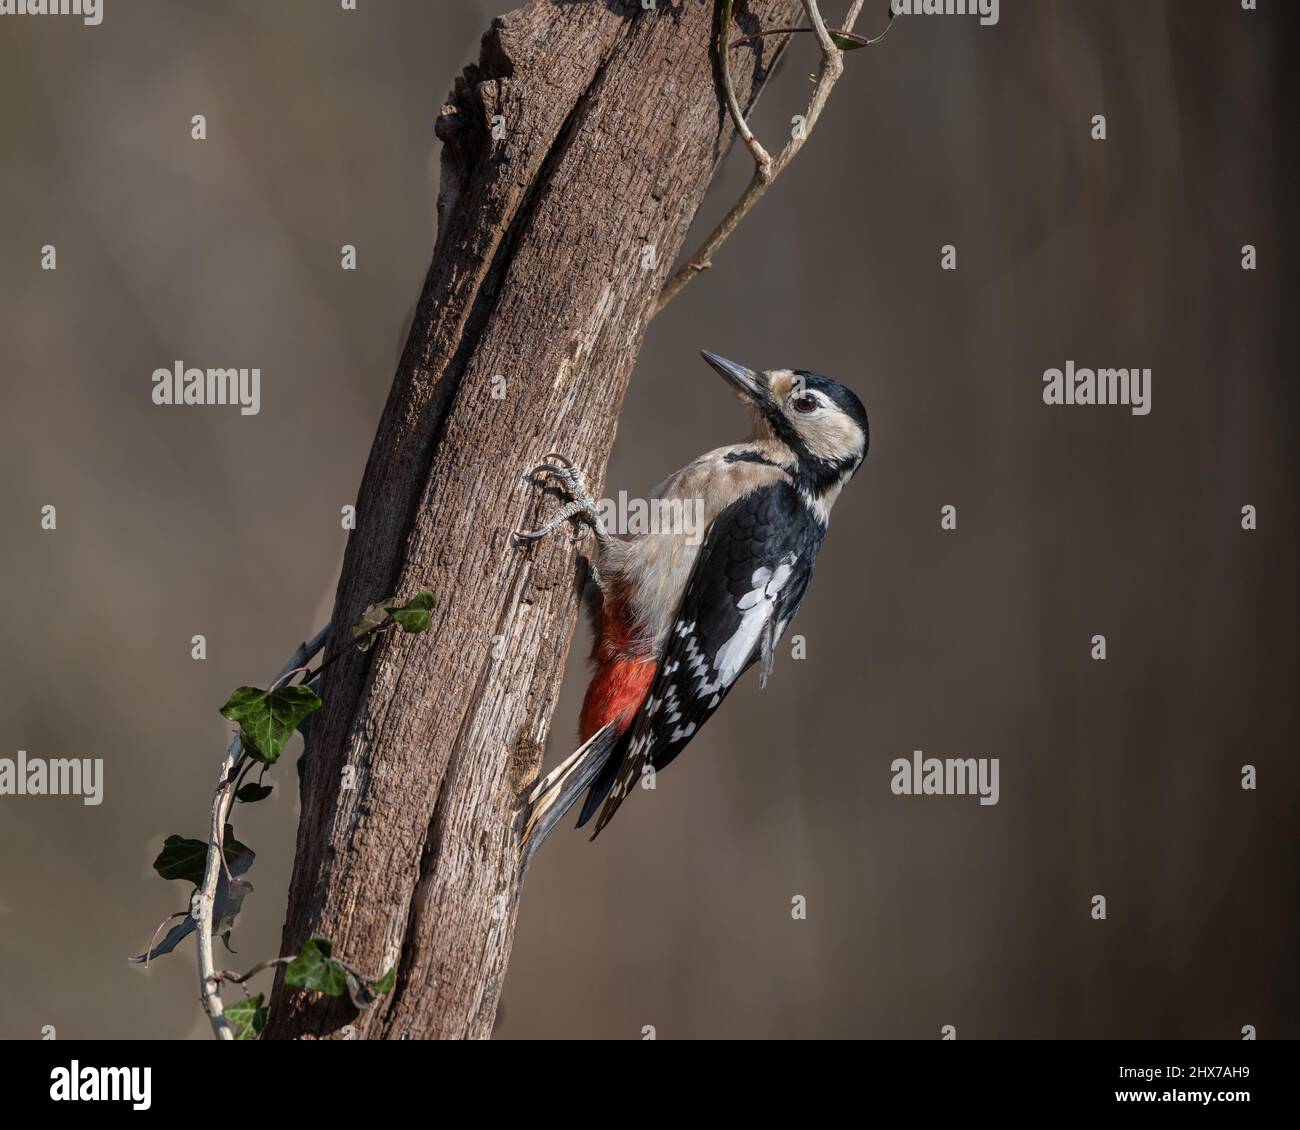 Un hombre de gran pájaro carpintero manchado (Dendrocopos Major) se aferra al tronco de un árbol mientras busca comida. Foto de stock